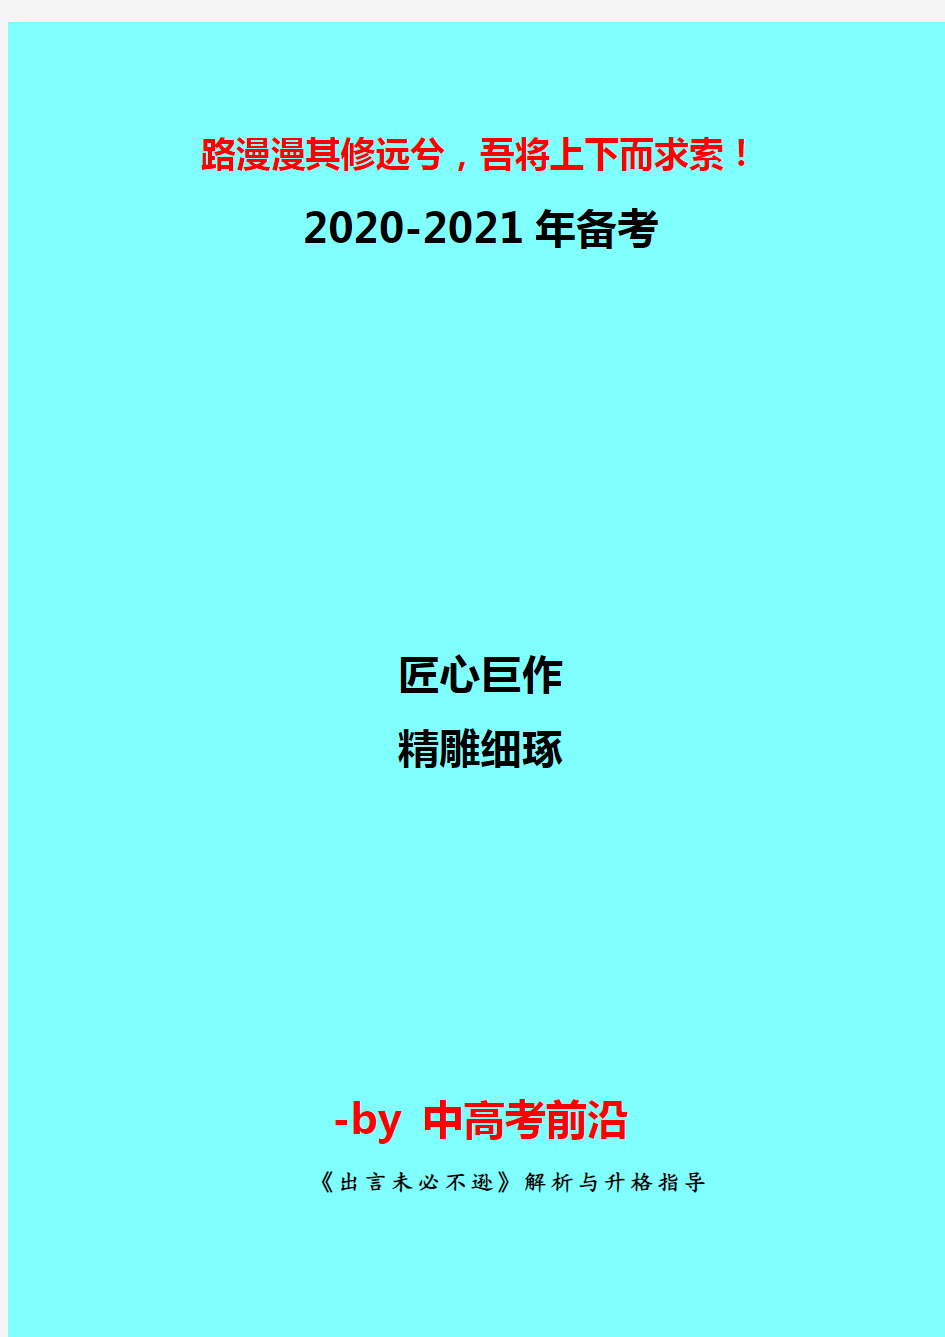 【2020-2021年高考作文指导】  《出言未必不逊》解析与升格指导-写作技巧训练